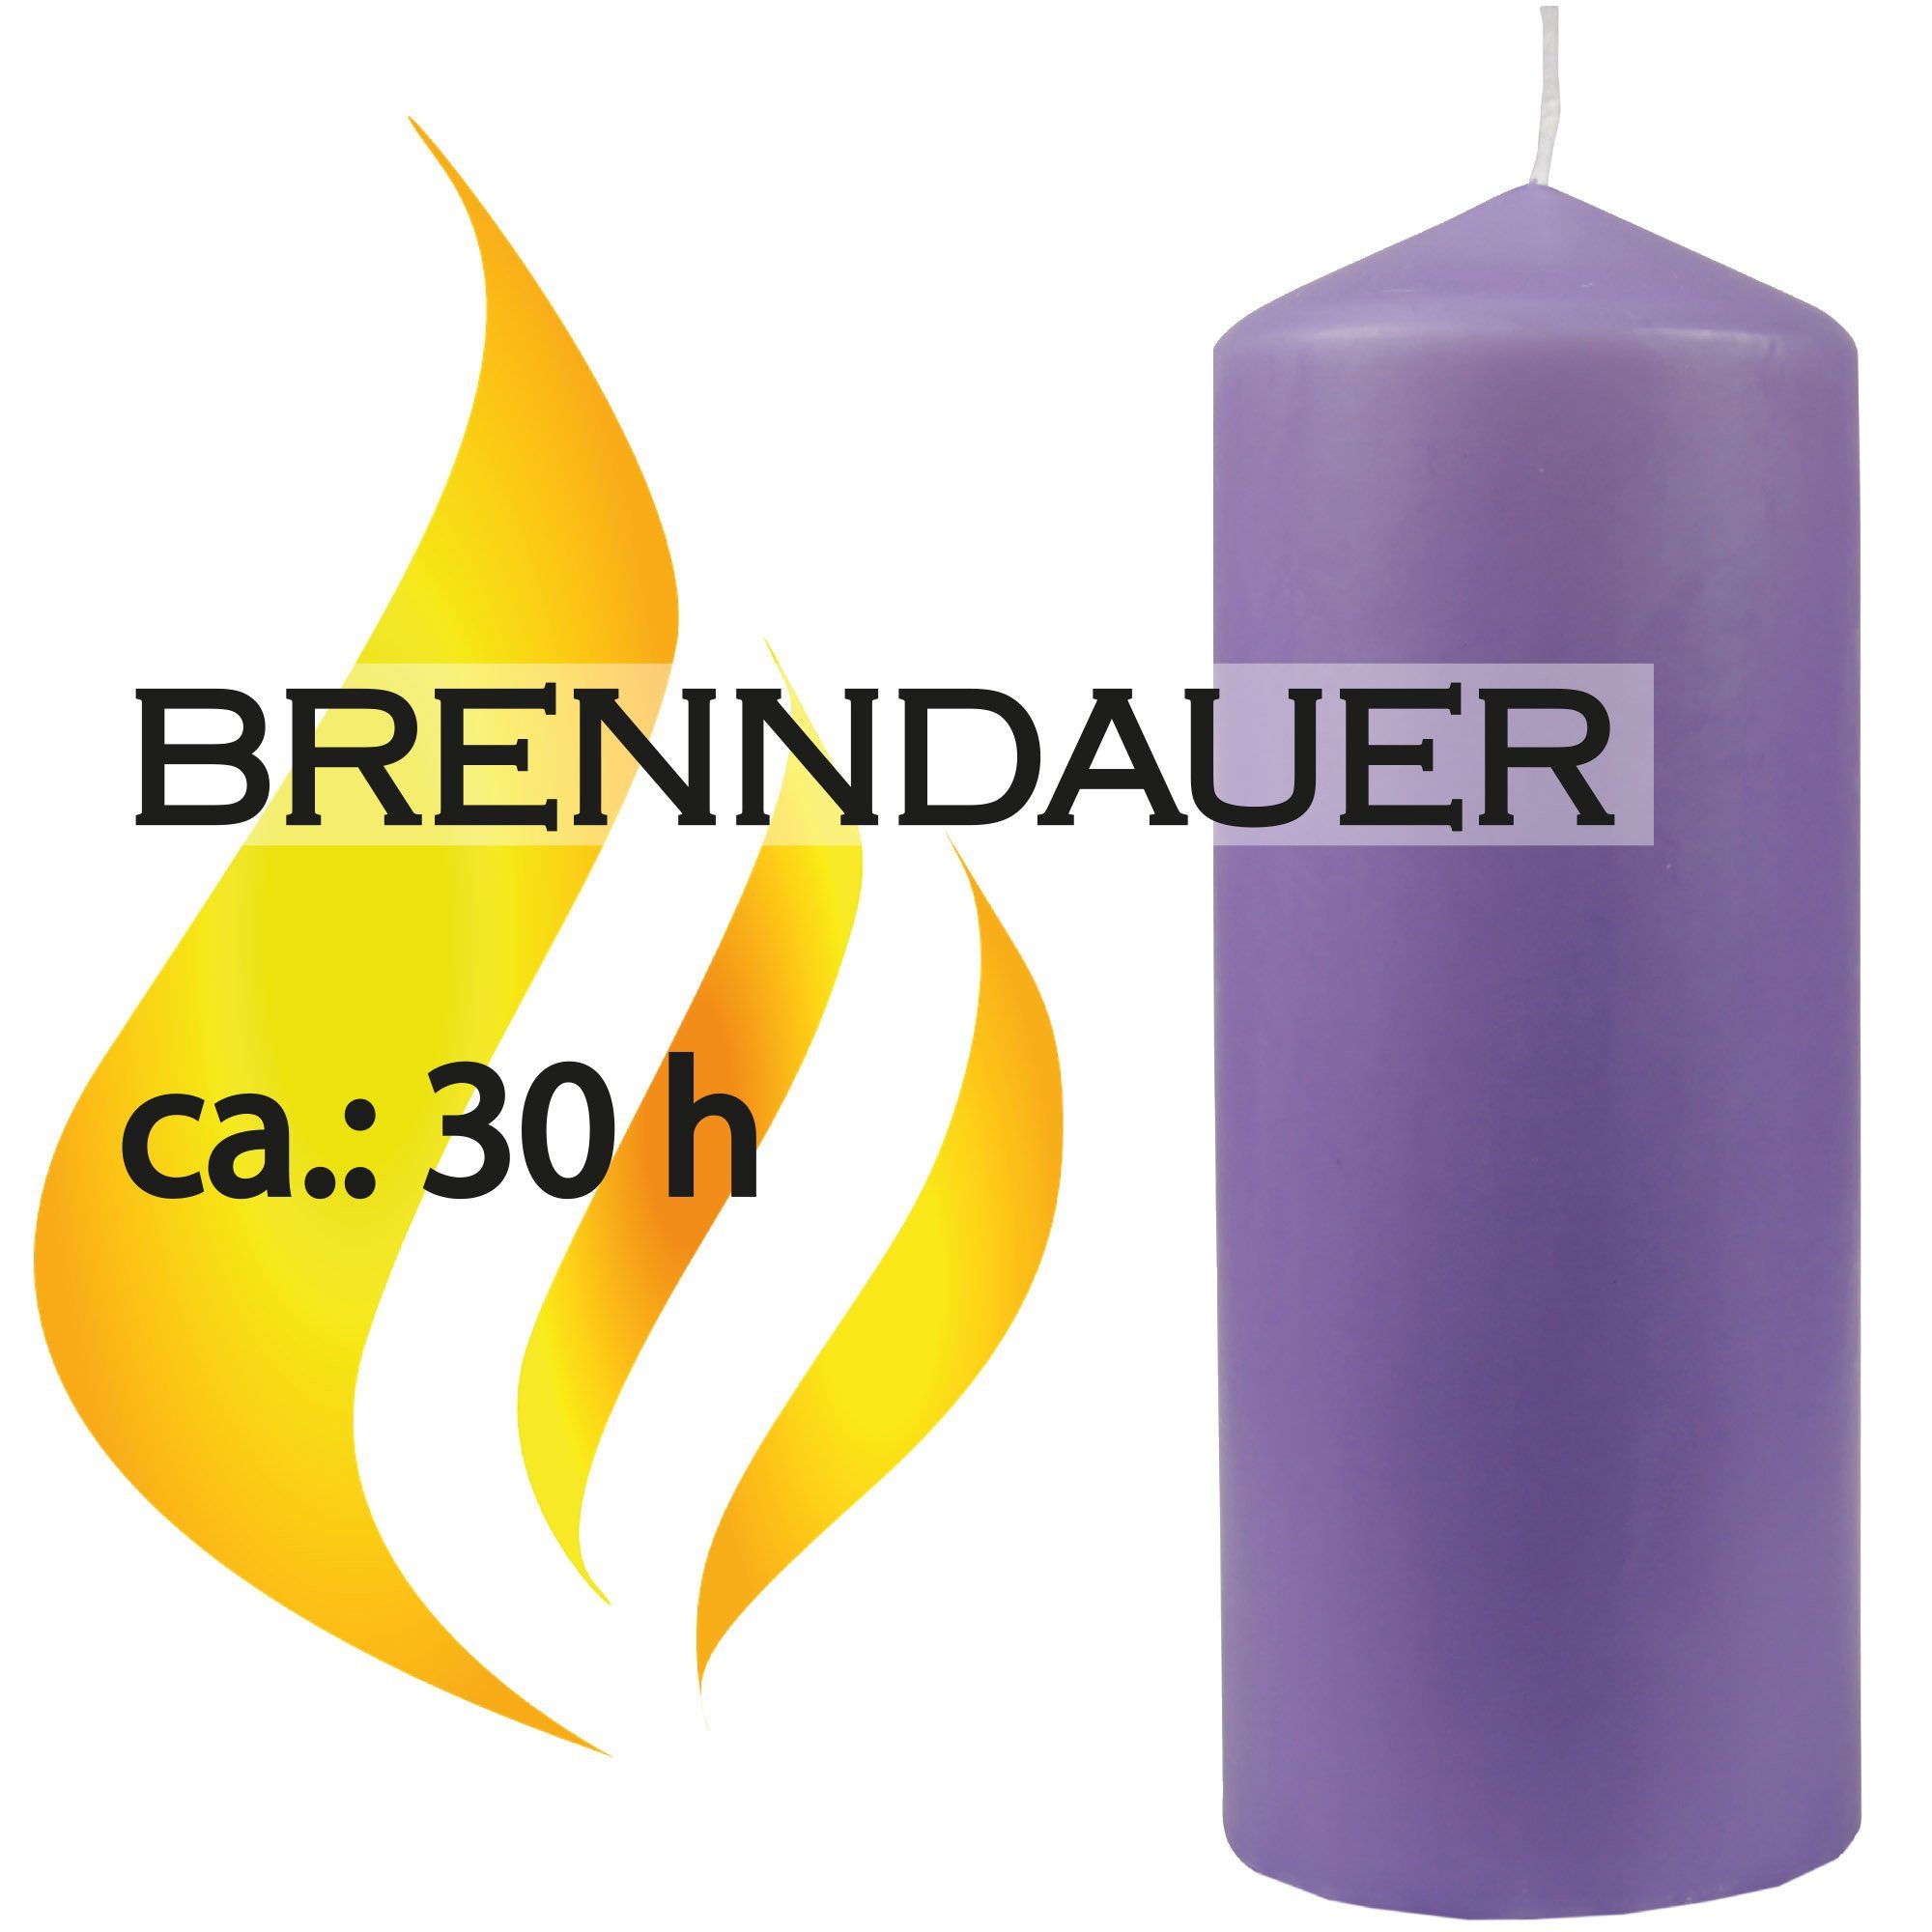 HS Candle Stumpenkerze Kerze Ø6cm 13,5cm Lila in Farben - x (3-tlg), Wachskerzen vielen Blockkerze